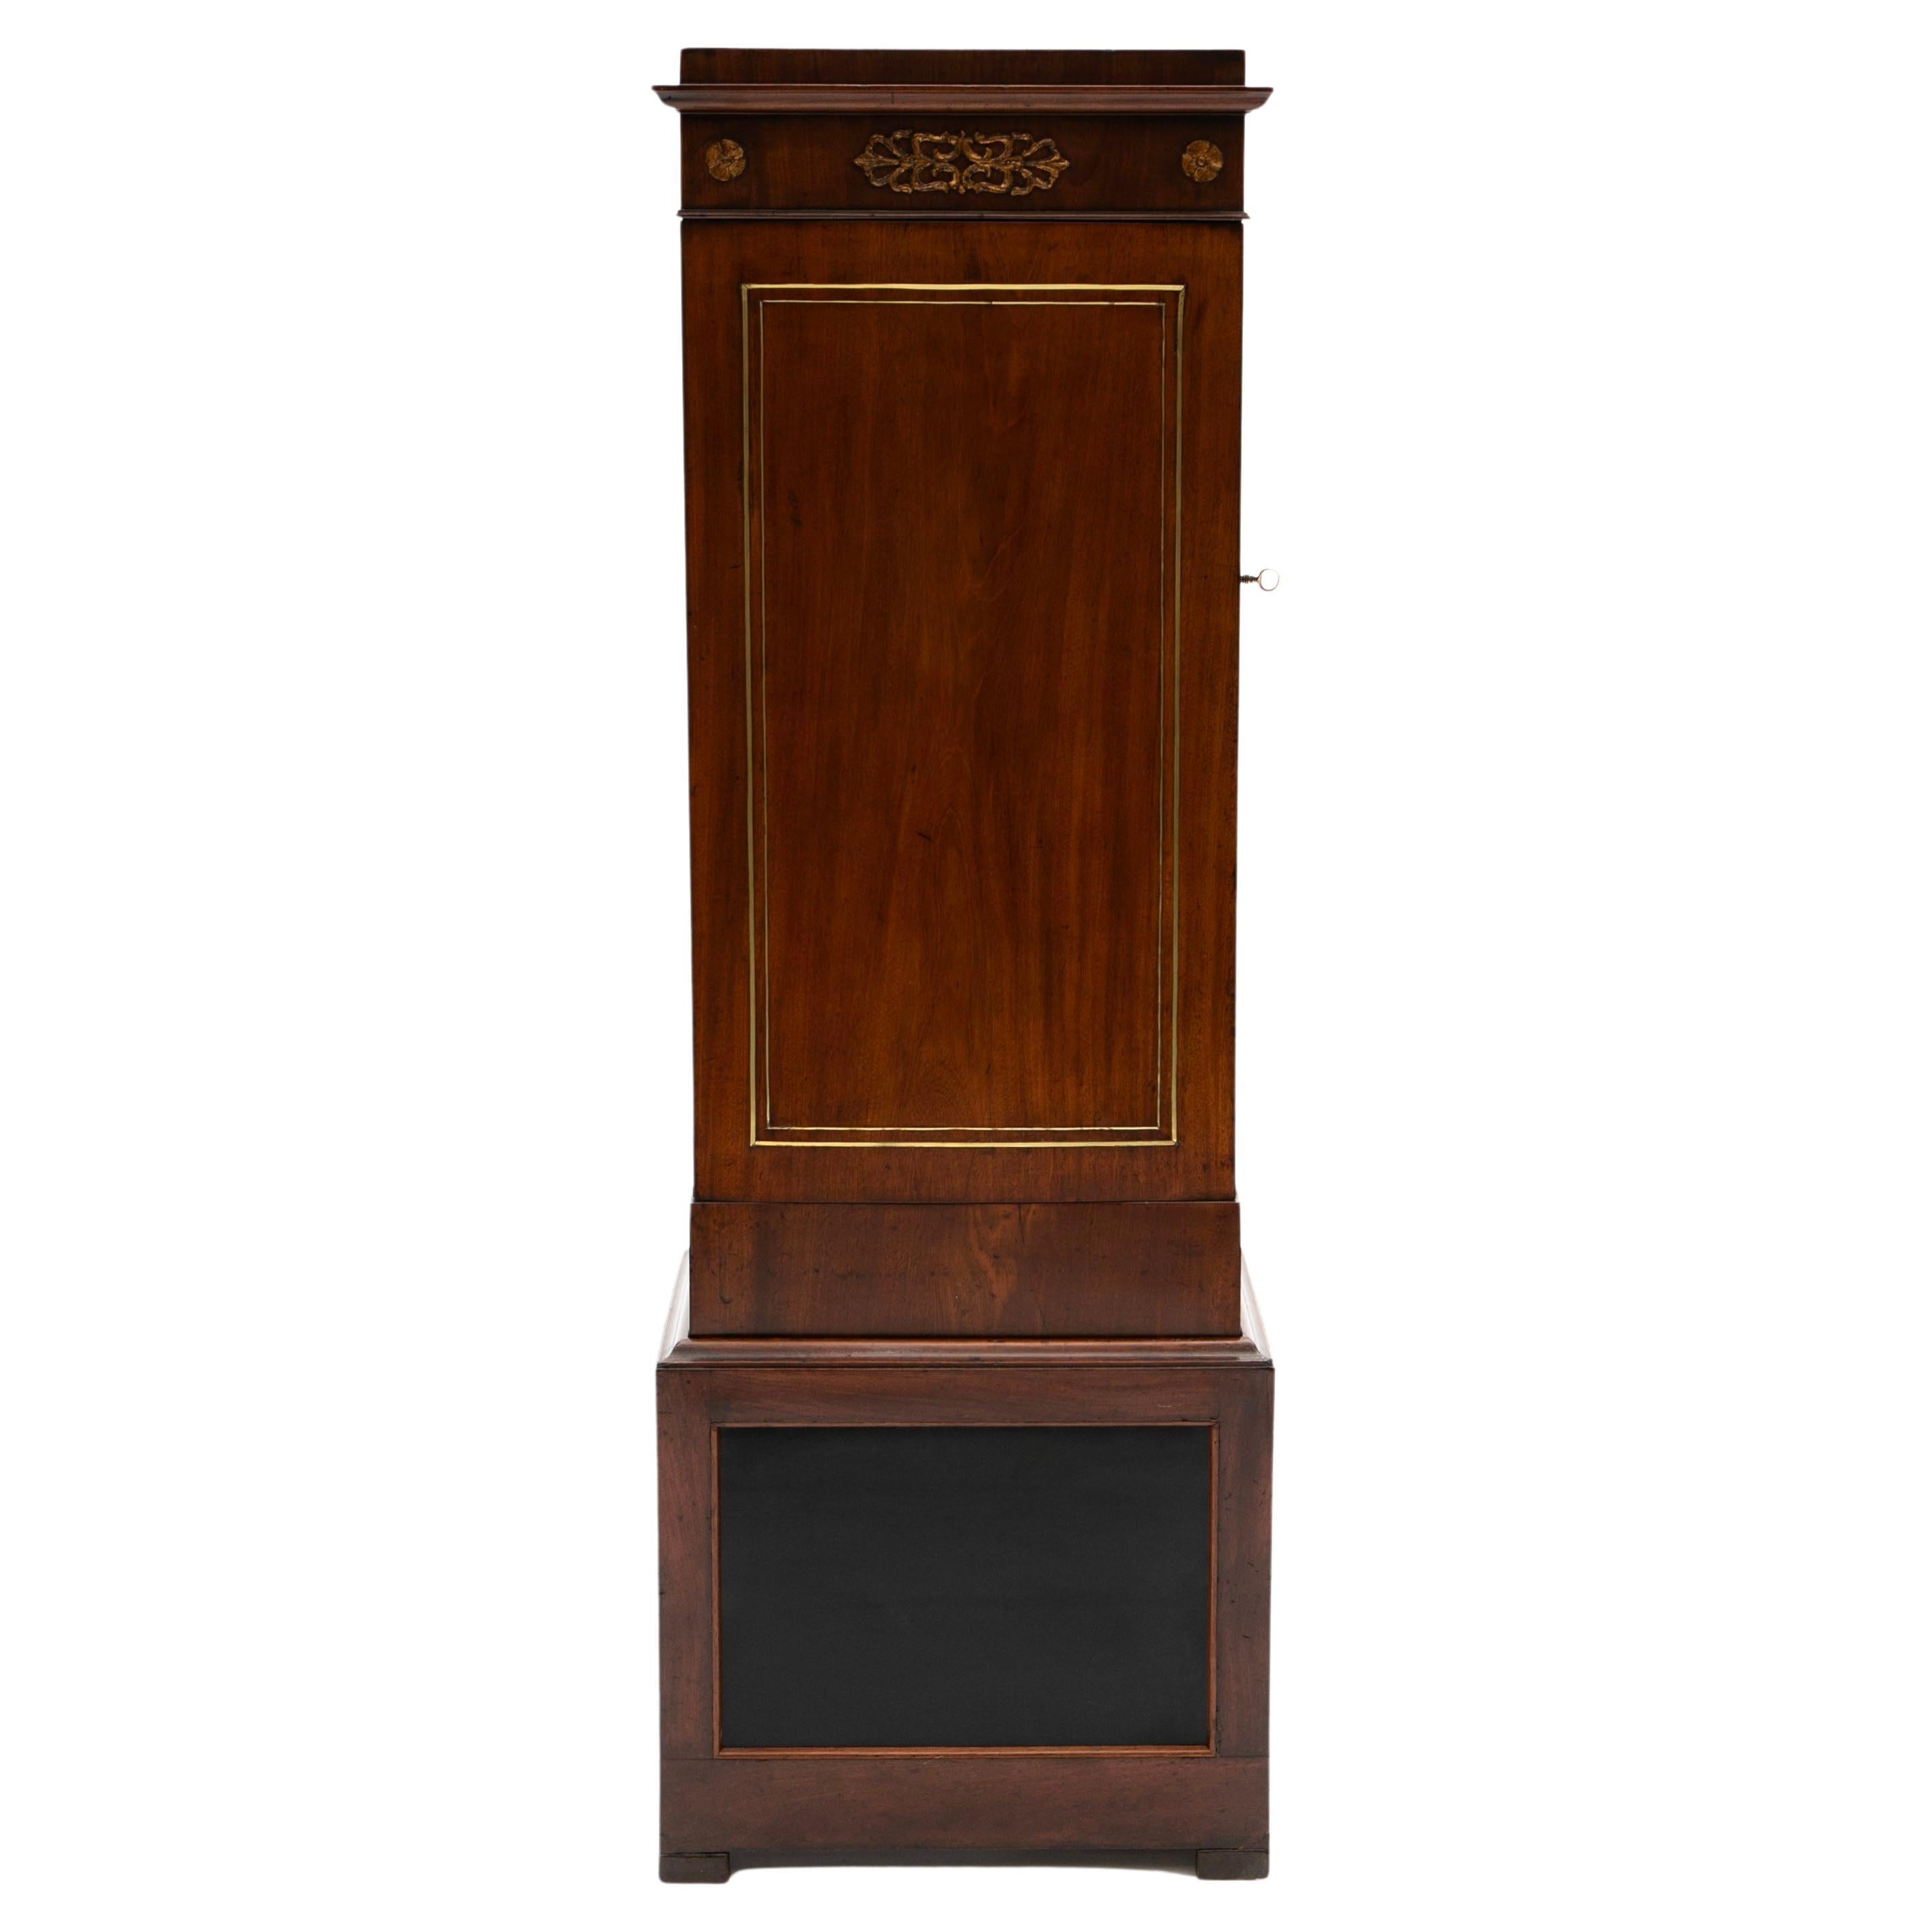 Elegance du début du 19e siècle - The Pedestal Cabinet en acajou Empire